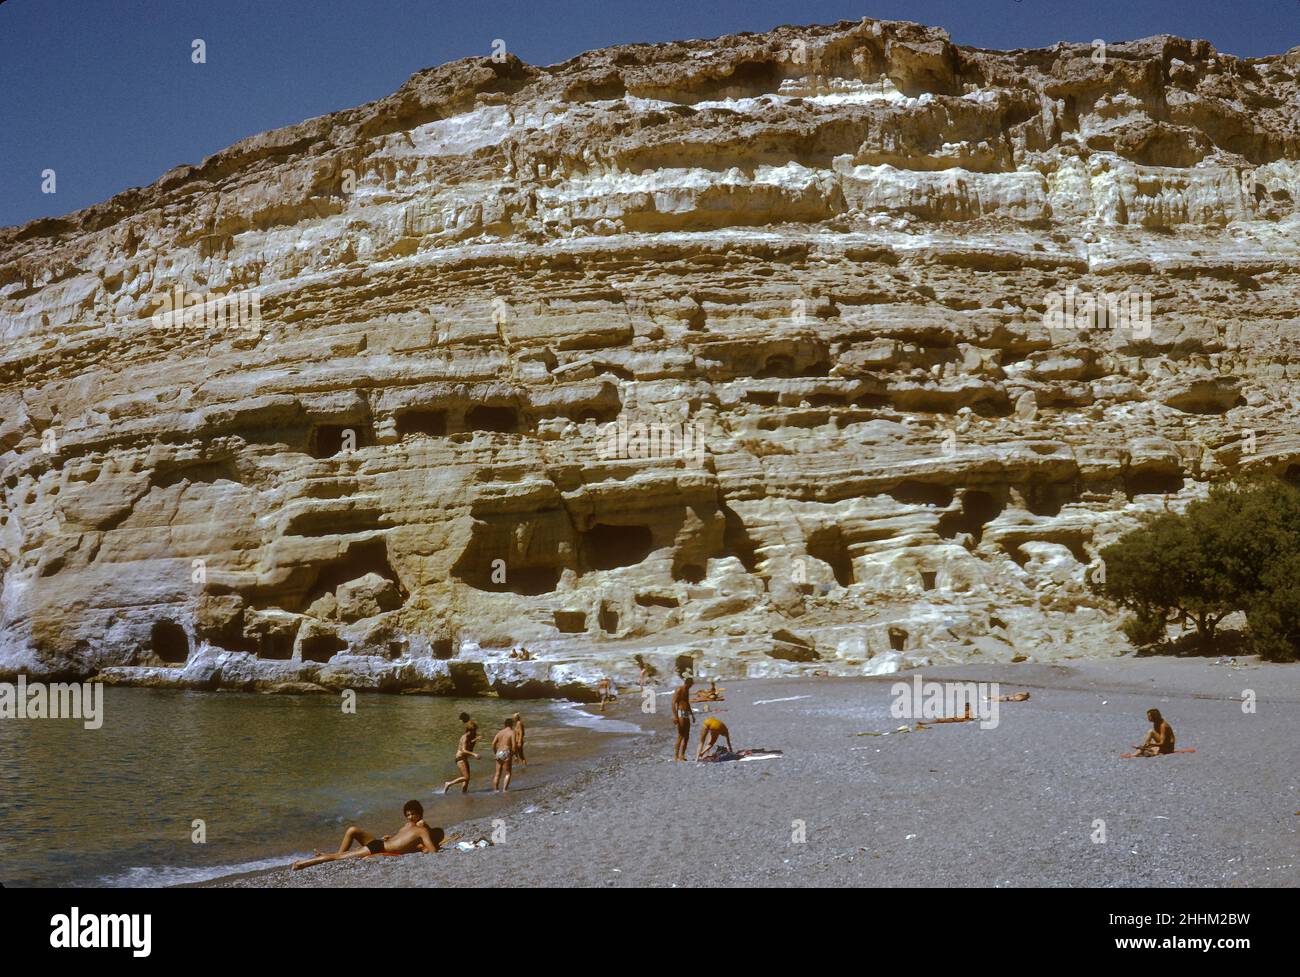 Matala Beach, mit einer Geschichte, die bis in die minoische Zivilisation zurückreicht, Kreta, Griechenland, 1974. In den sechziger und siebziger Jahren waren die Höhlen hier ein bevorzugter Rückzugsort für Hippie- oder Shoestring-Reisende. Stockfoto